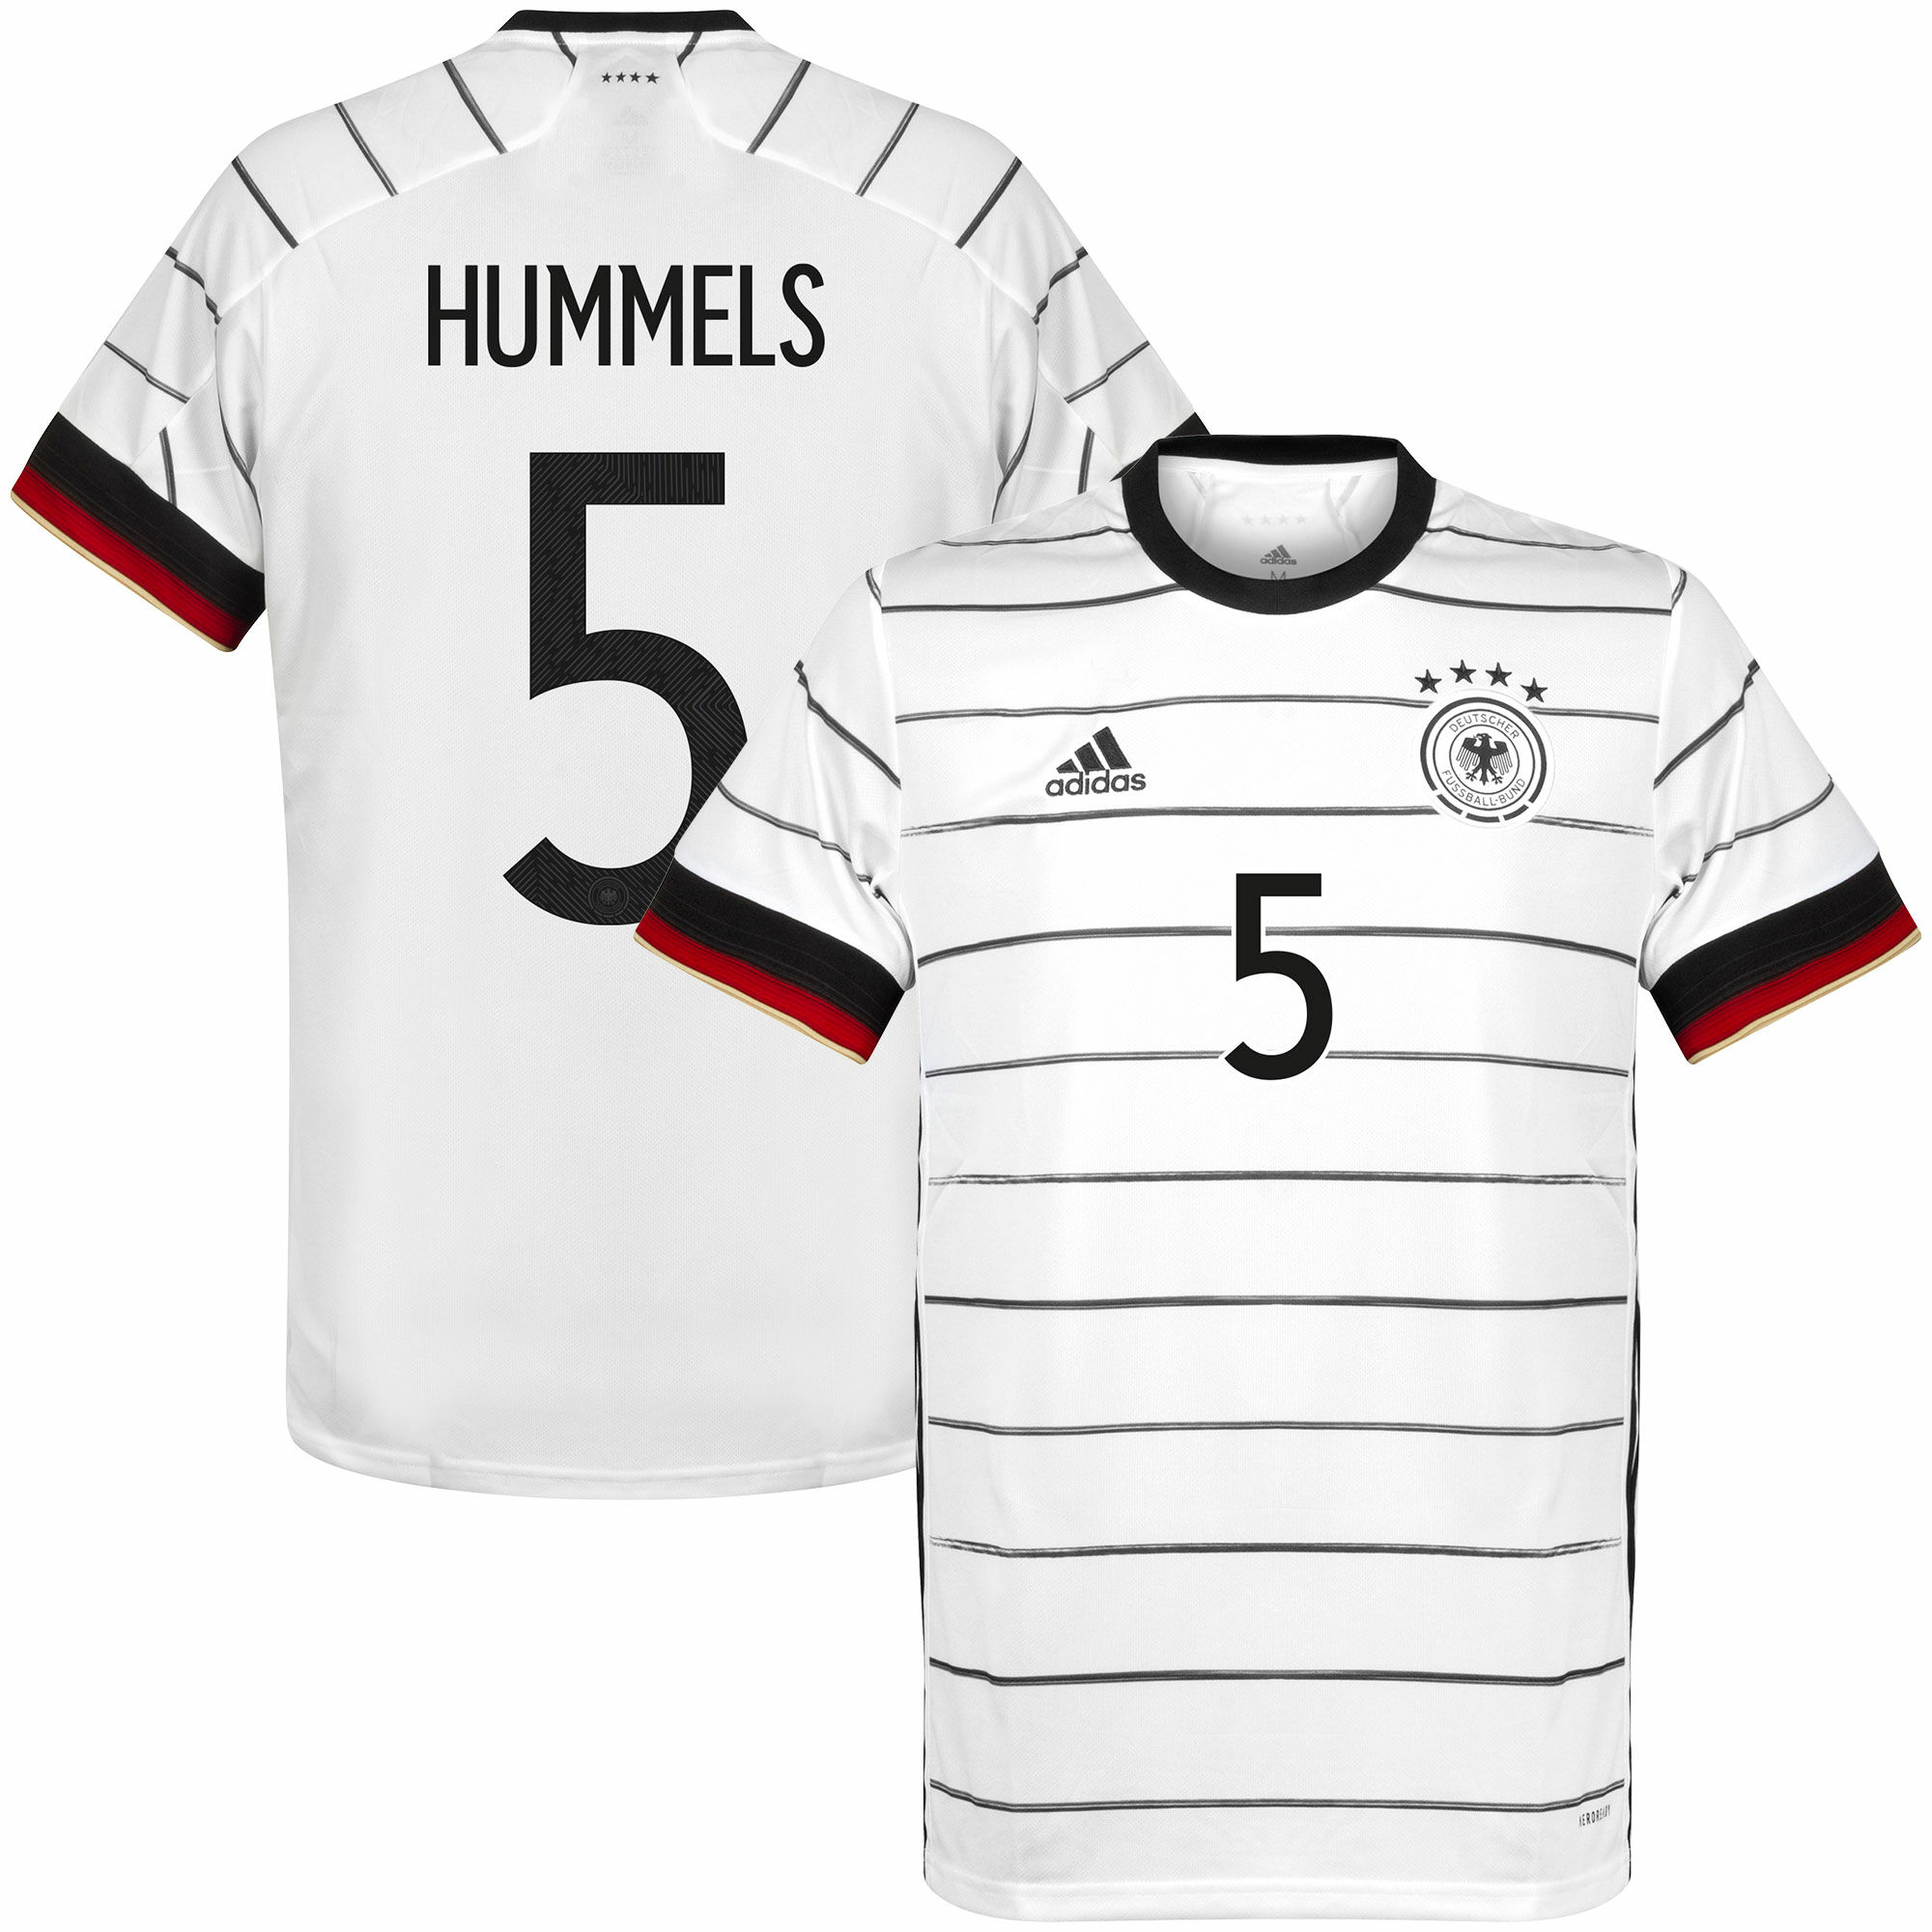 Německo - Dres fotbalový - bílý, sezóna 2020/21, domácí, Mats Hummels, číslo 5